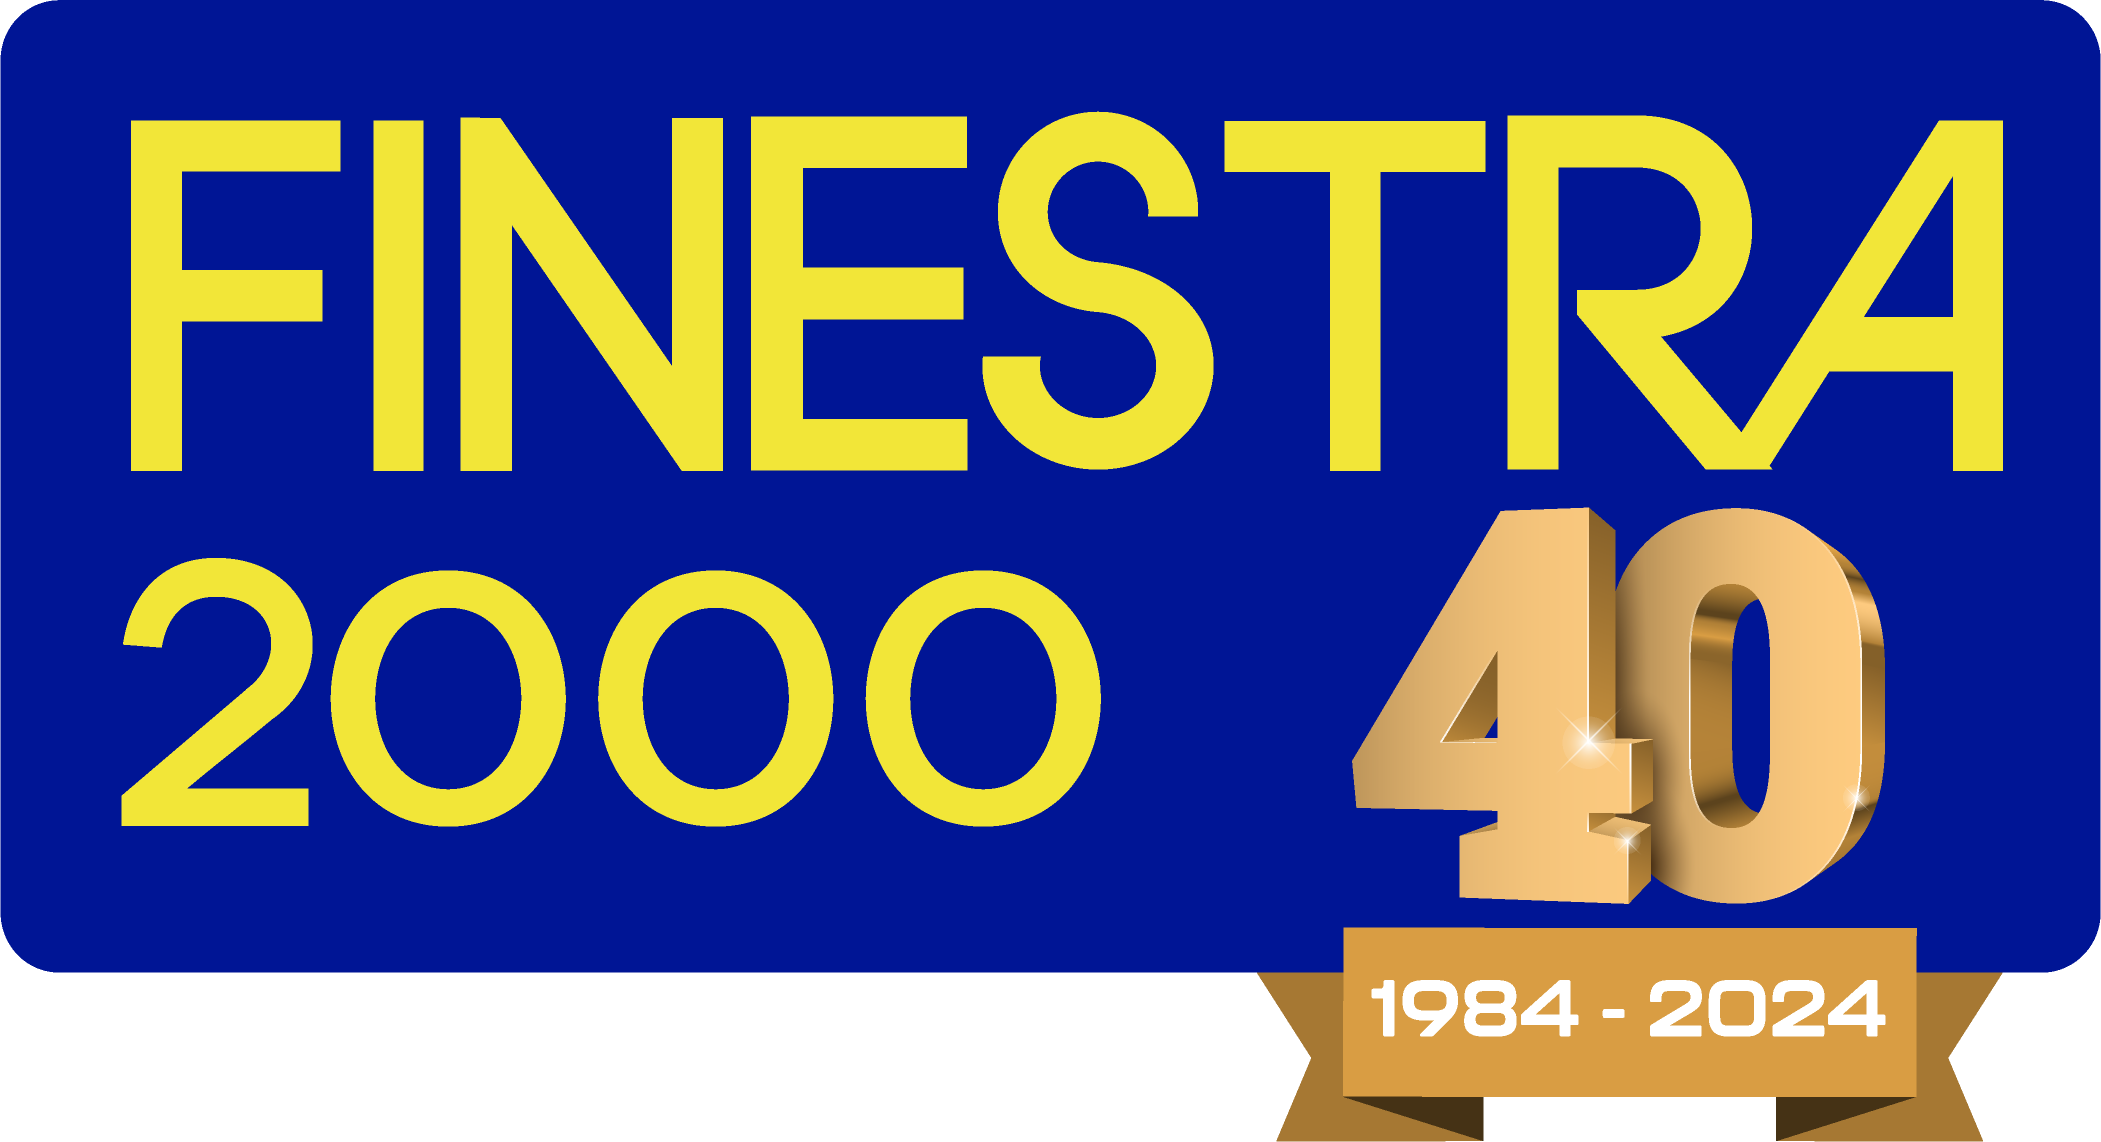 Finestra 2000